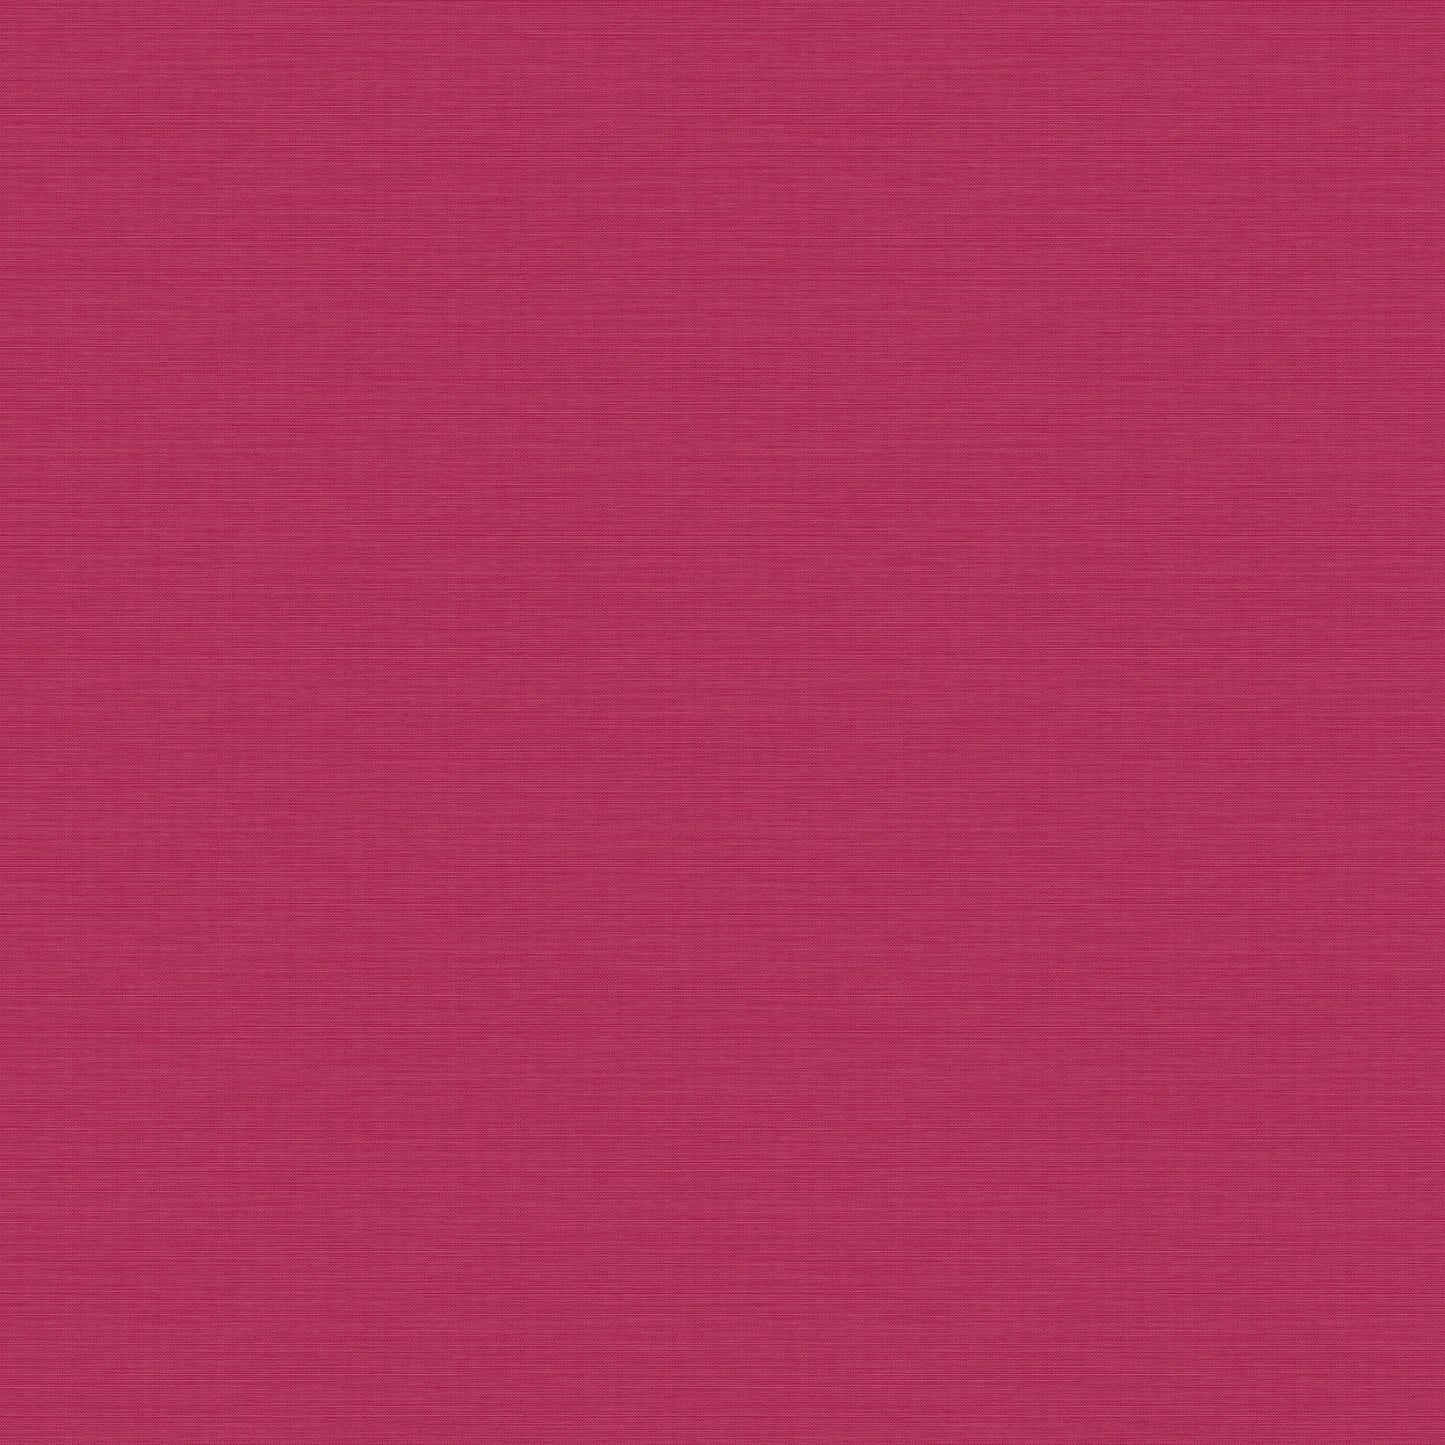 Graham & Brown Stitch Please Hot Pink Wallpaper (122354)